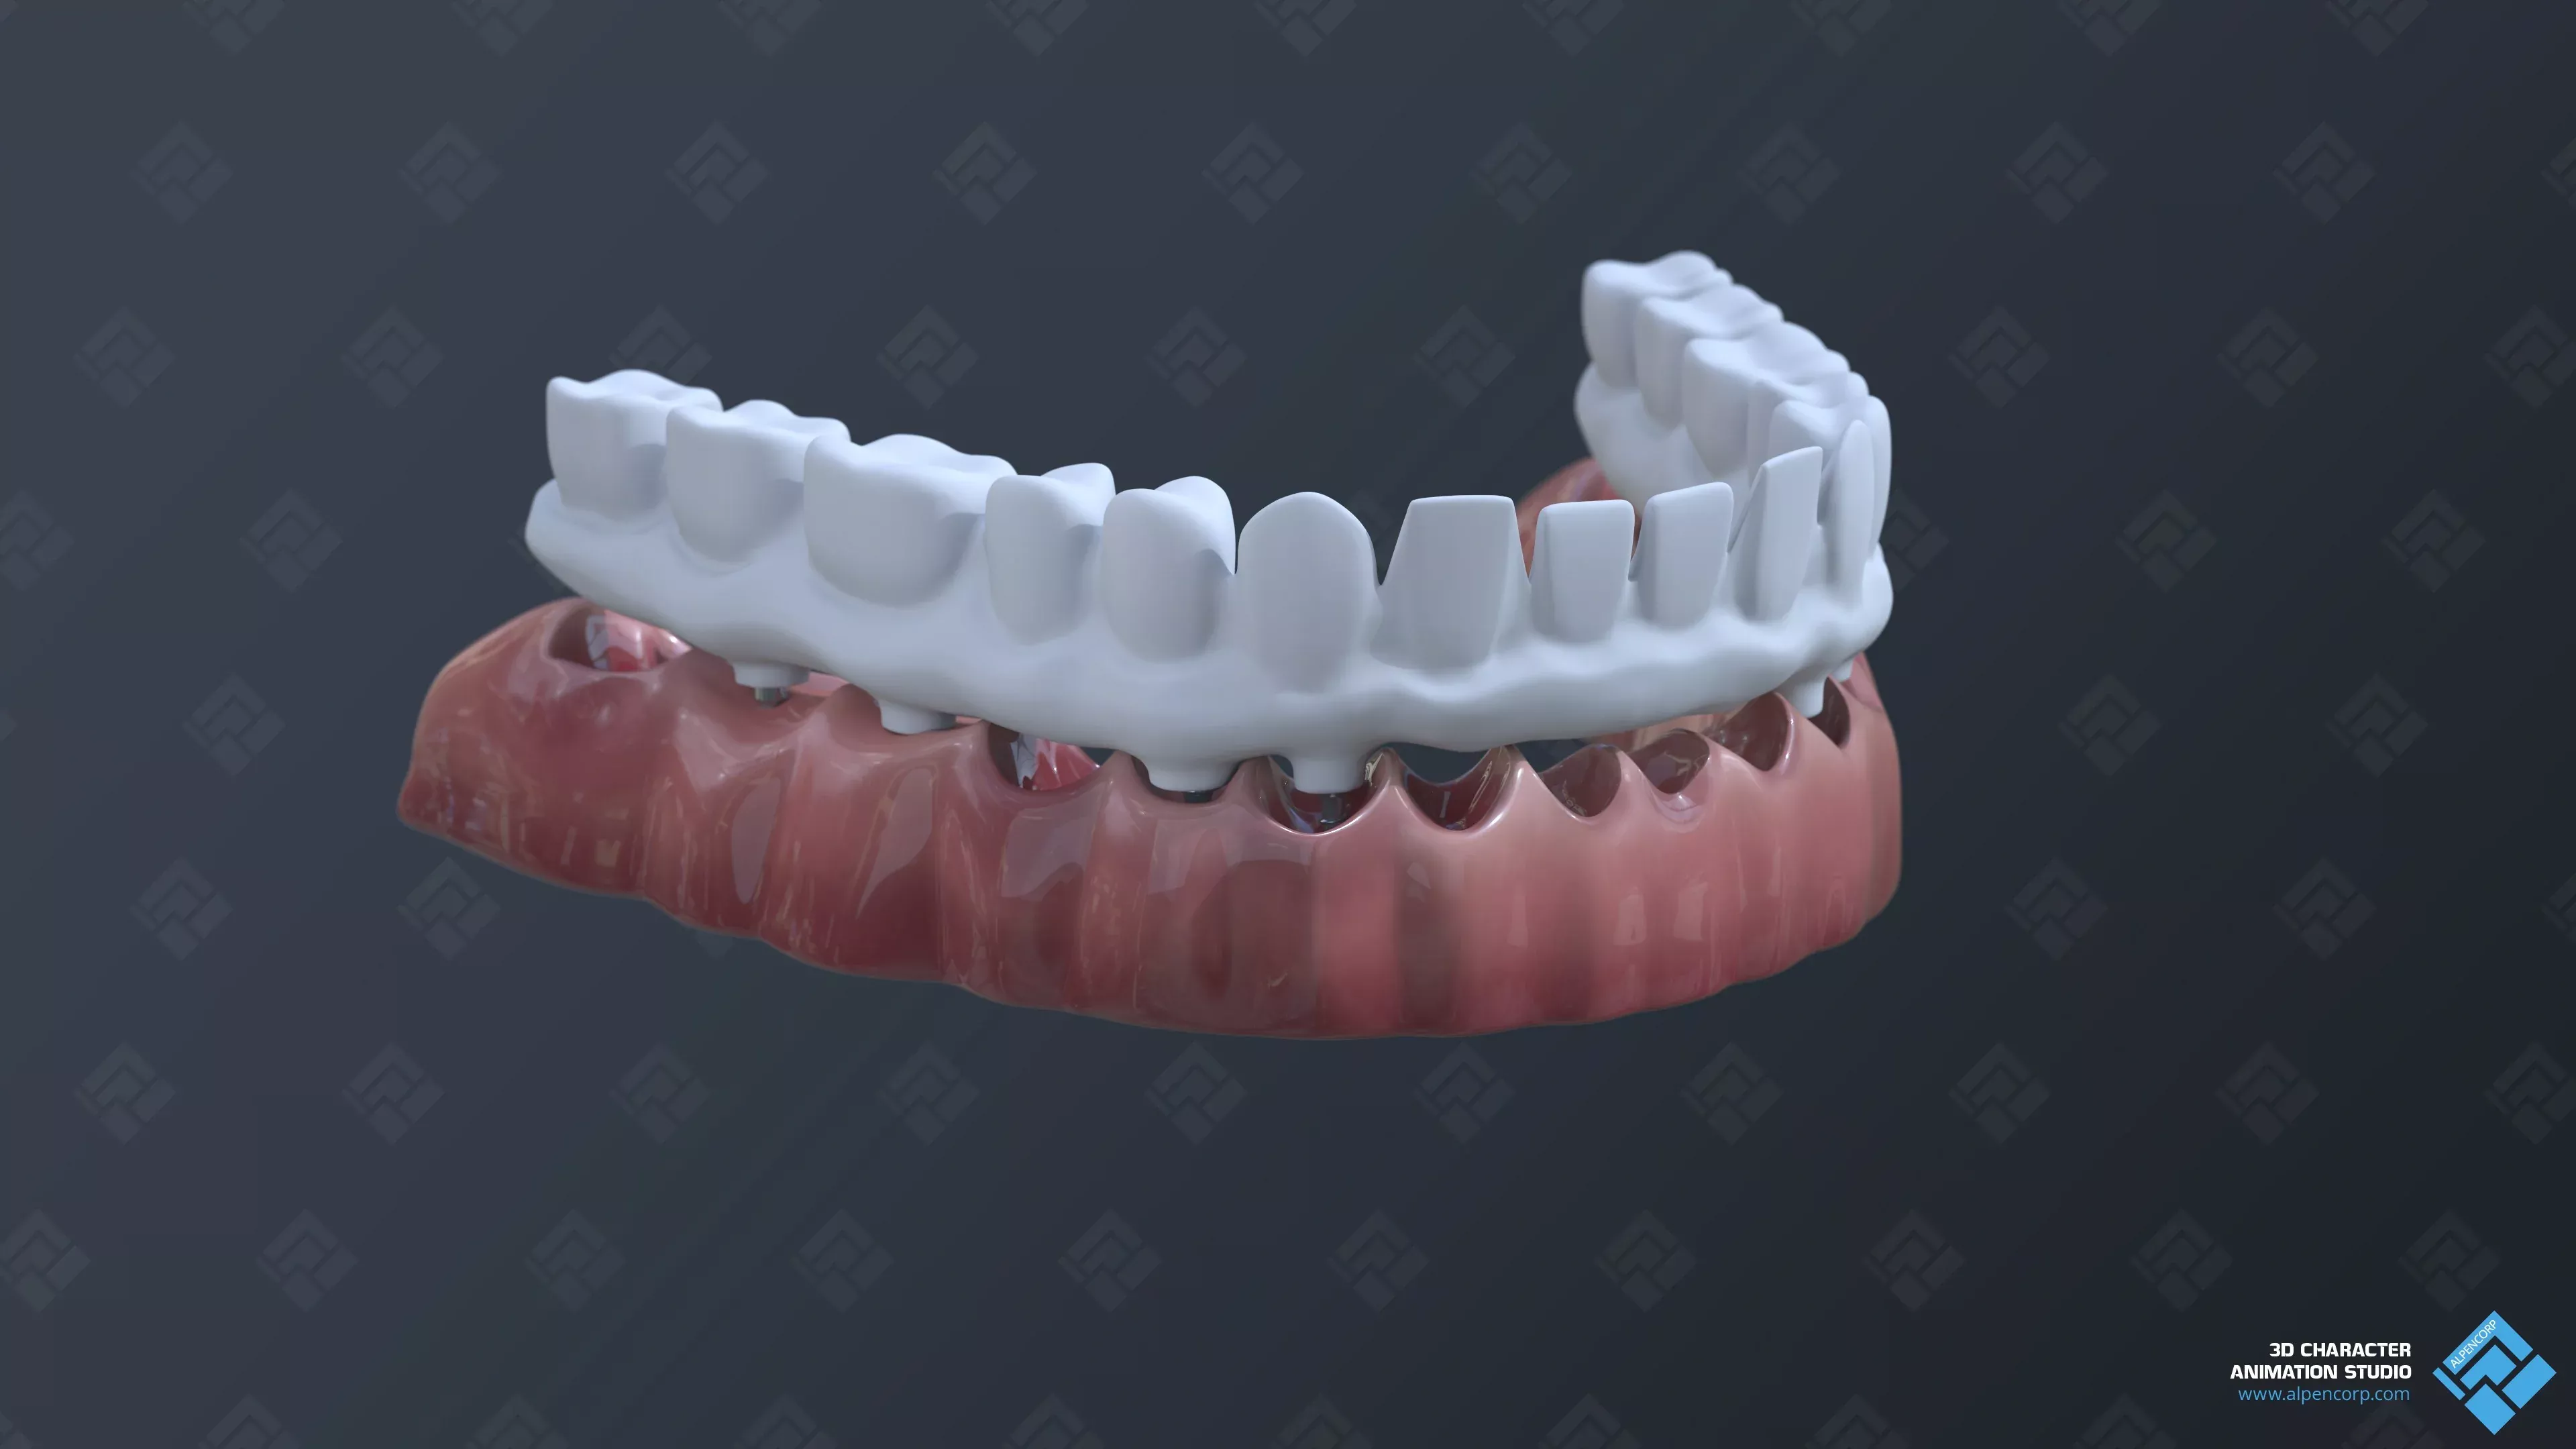 The dental bridge's frame model.